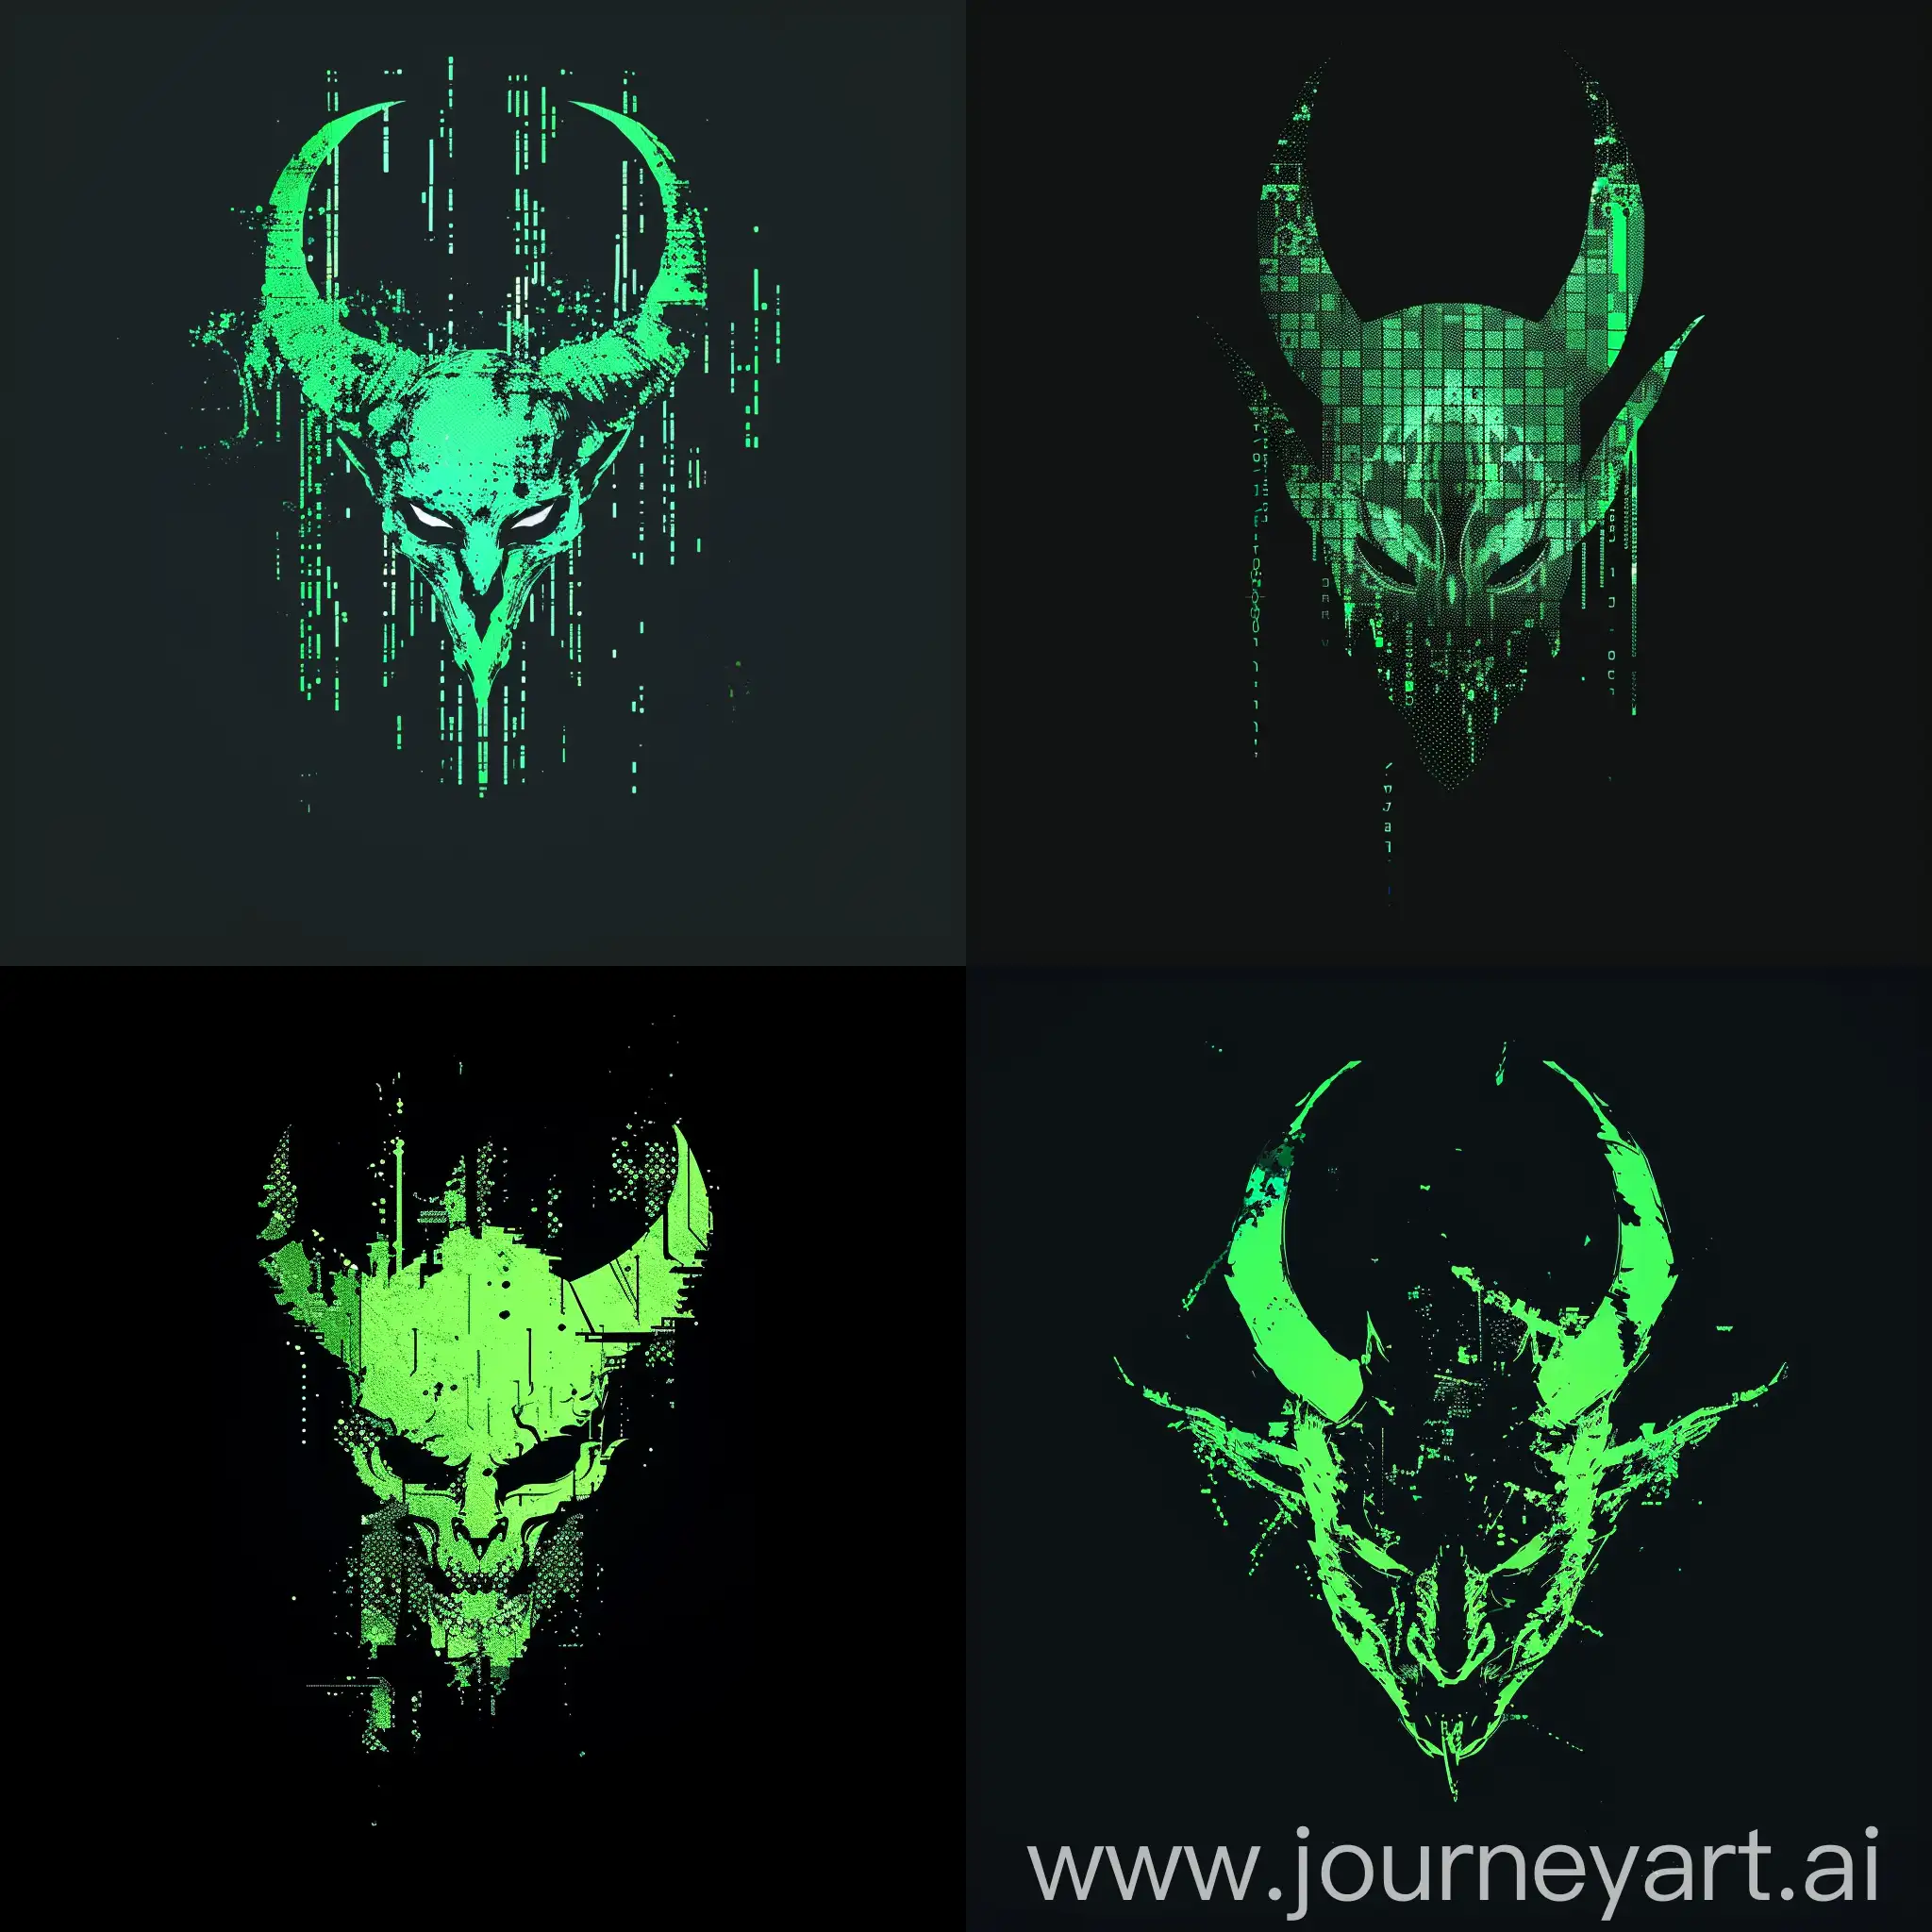 Futuristic-Devil-Head-Silhouette-in-Vibrant-Green-Cyberpunk-Minimalistic-Art